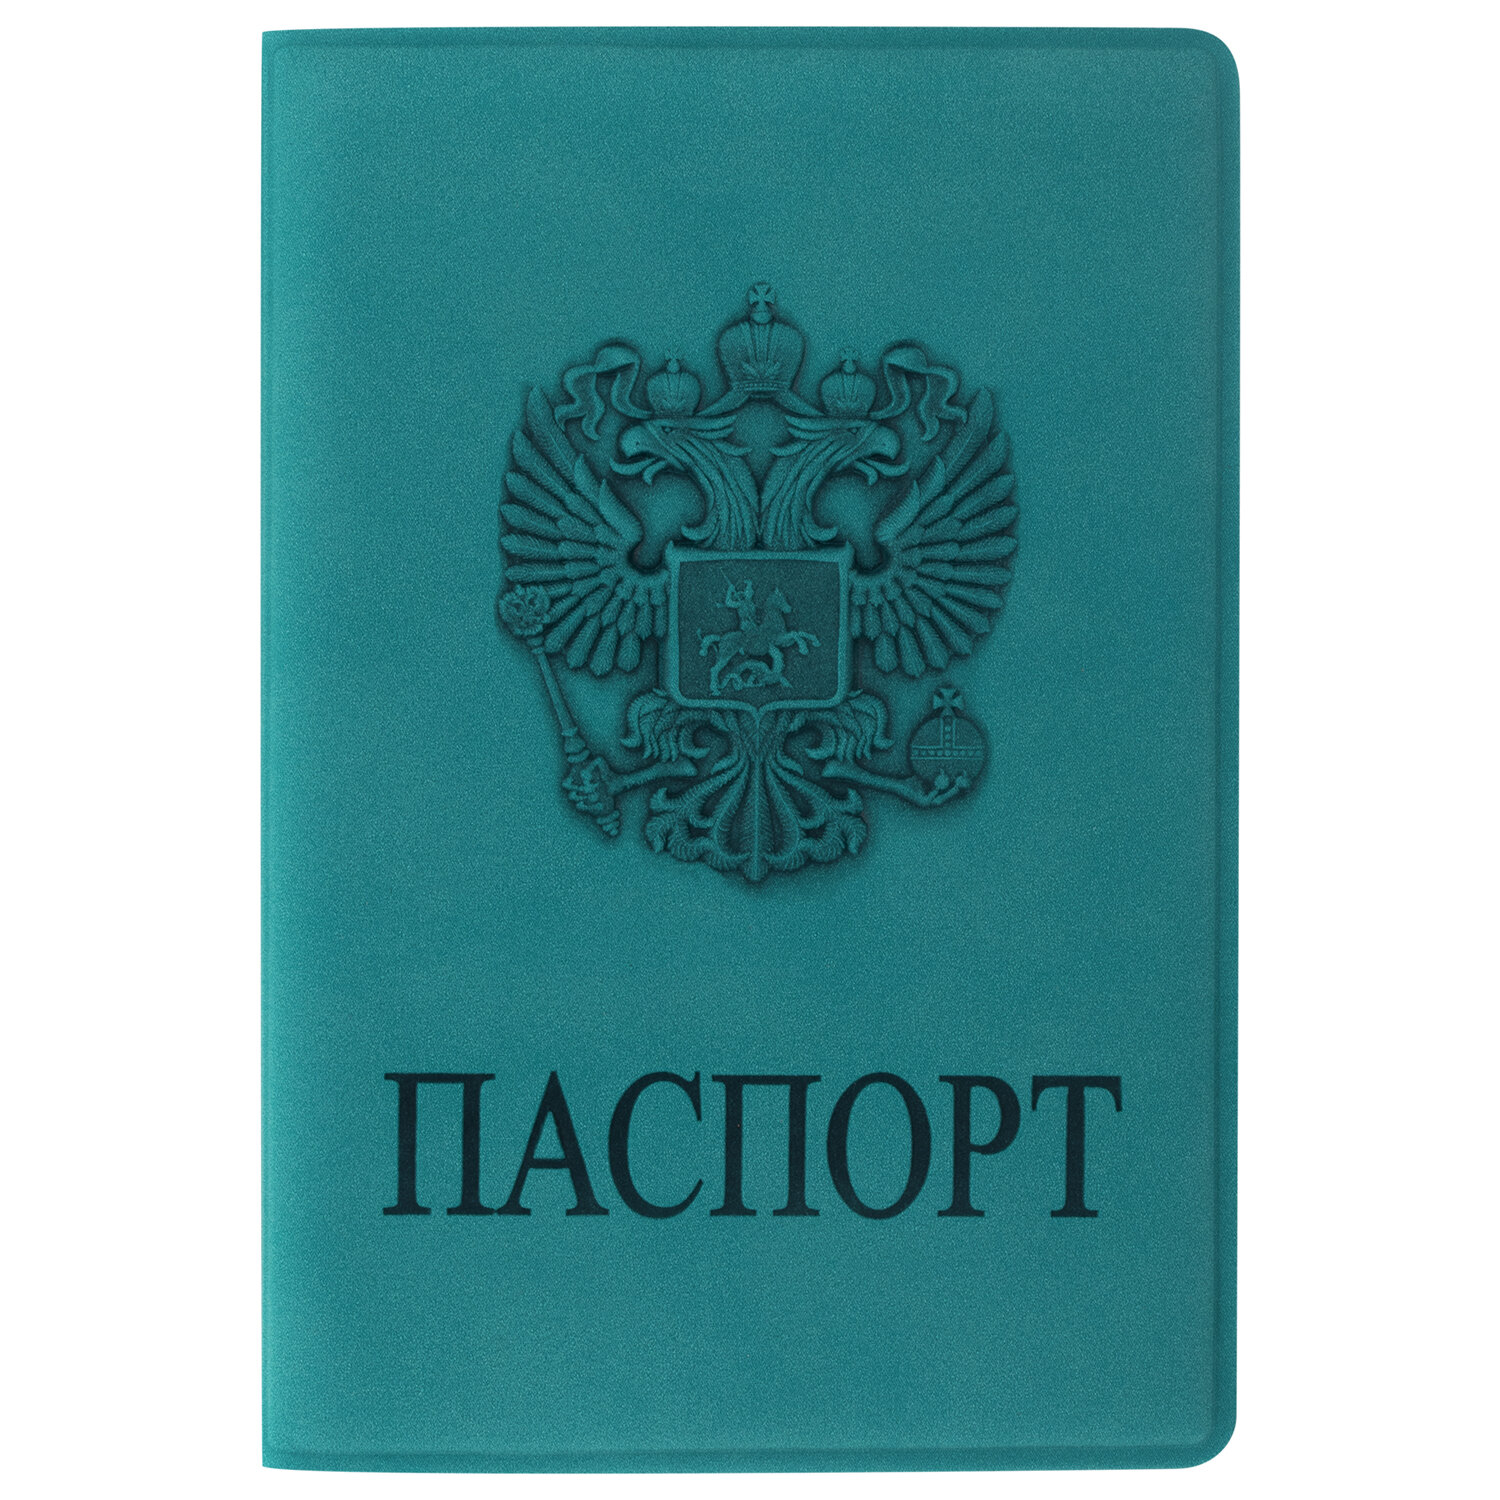 Обложка для паспорта Staff мягкий полиуретан, с гербом, тёмно-бирюзовый